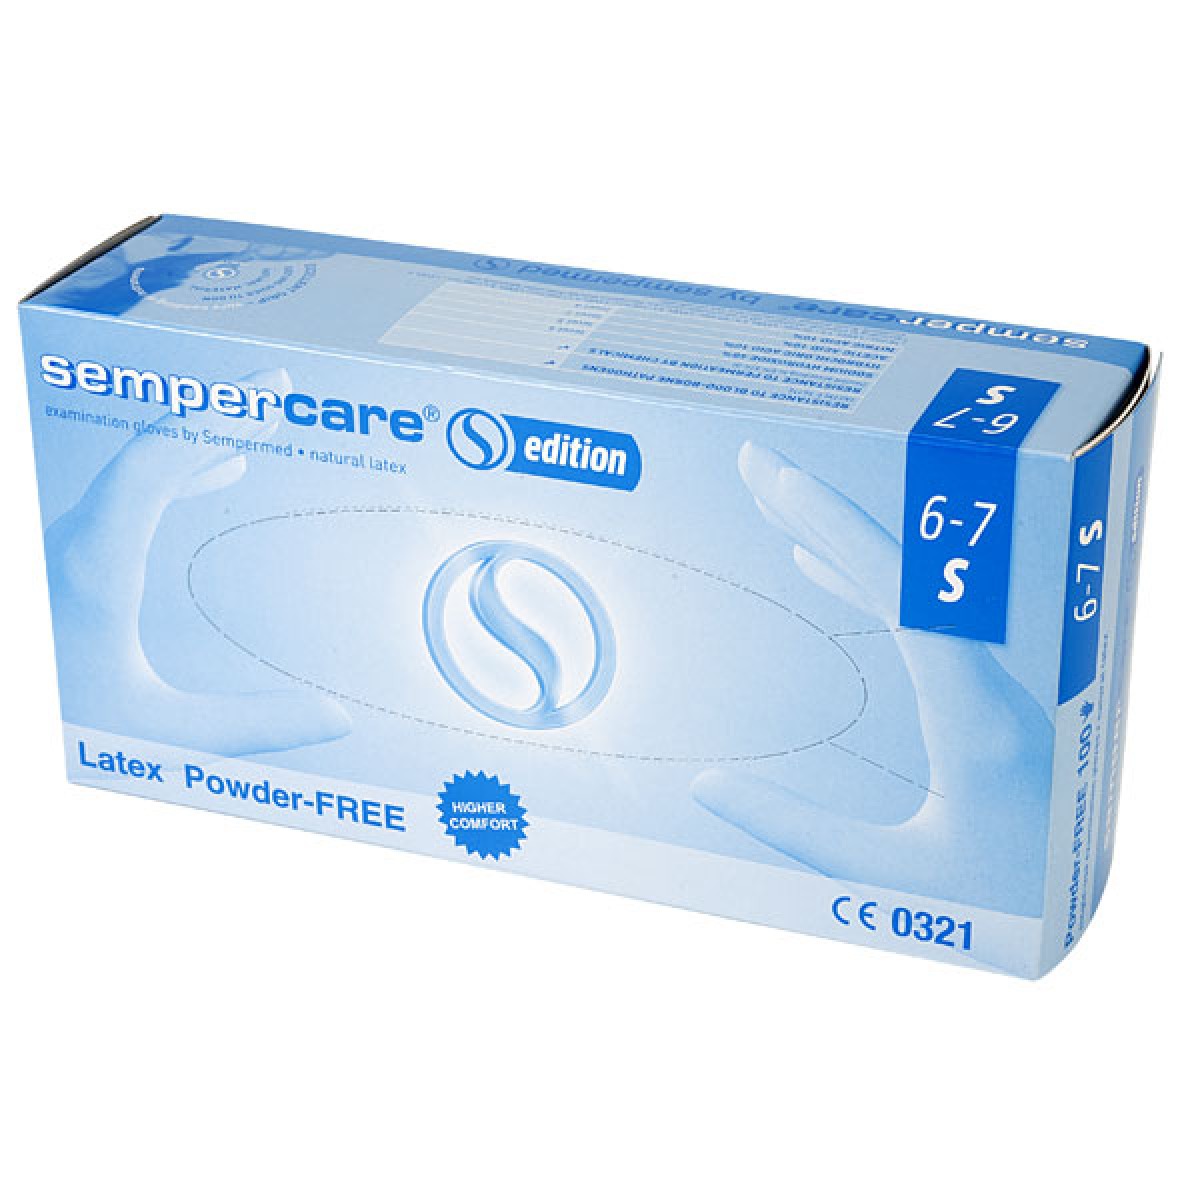 SEMPERCARE® Edition Latex Powder-Free kesztyű fehér "S 6-7" 100 db